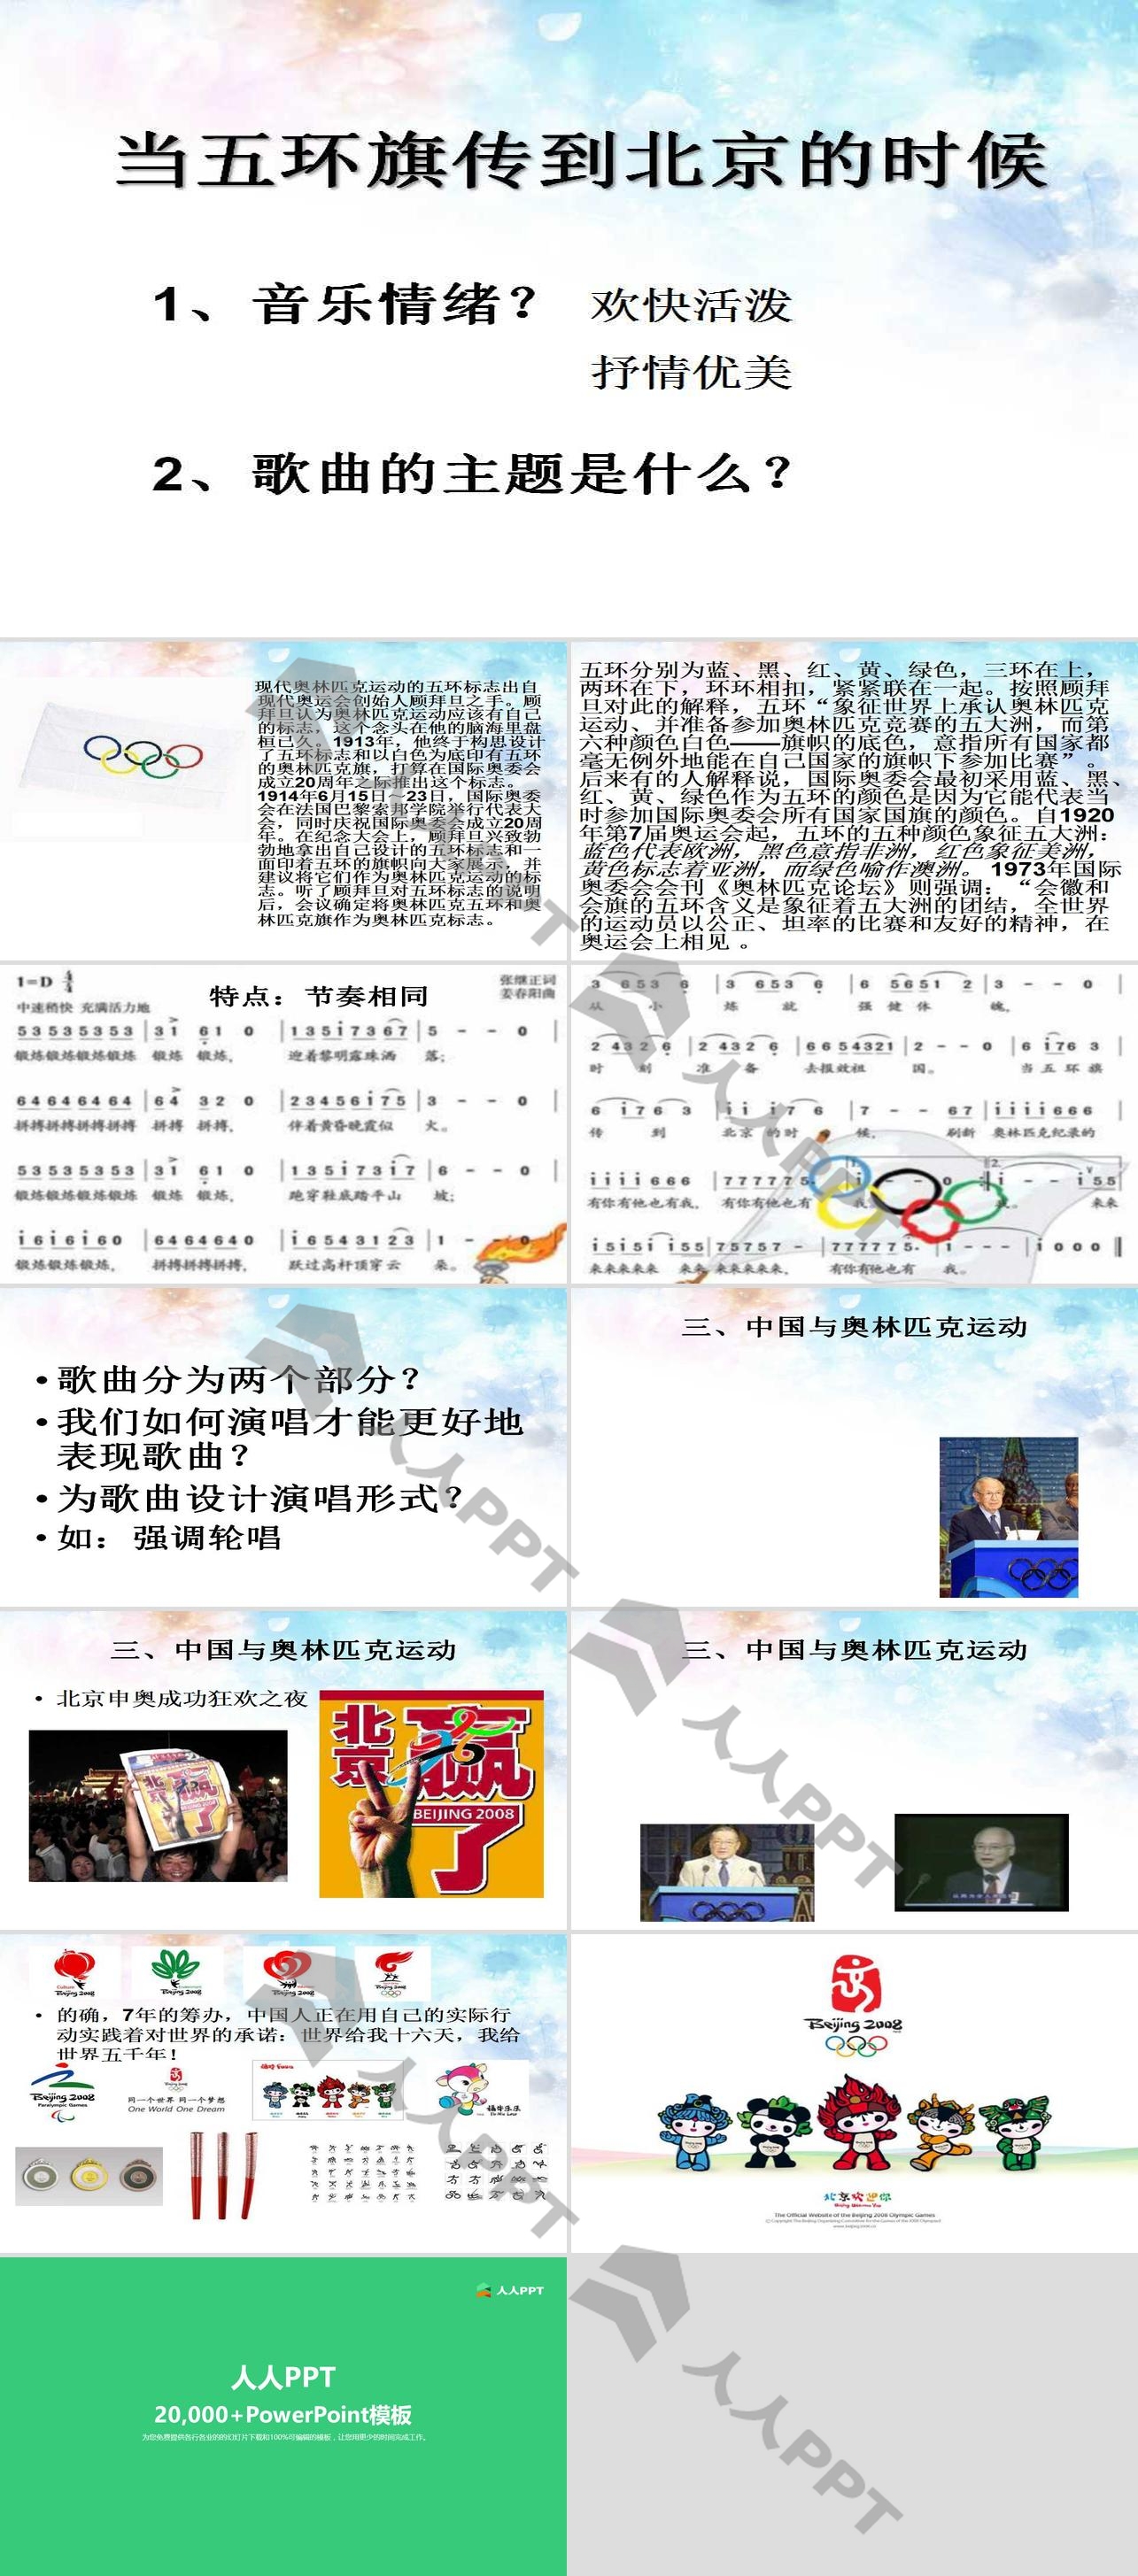 《当五环旗传到北京的时候》PPT课件2长图